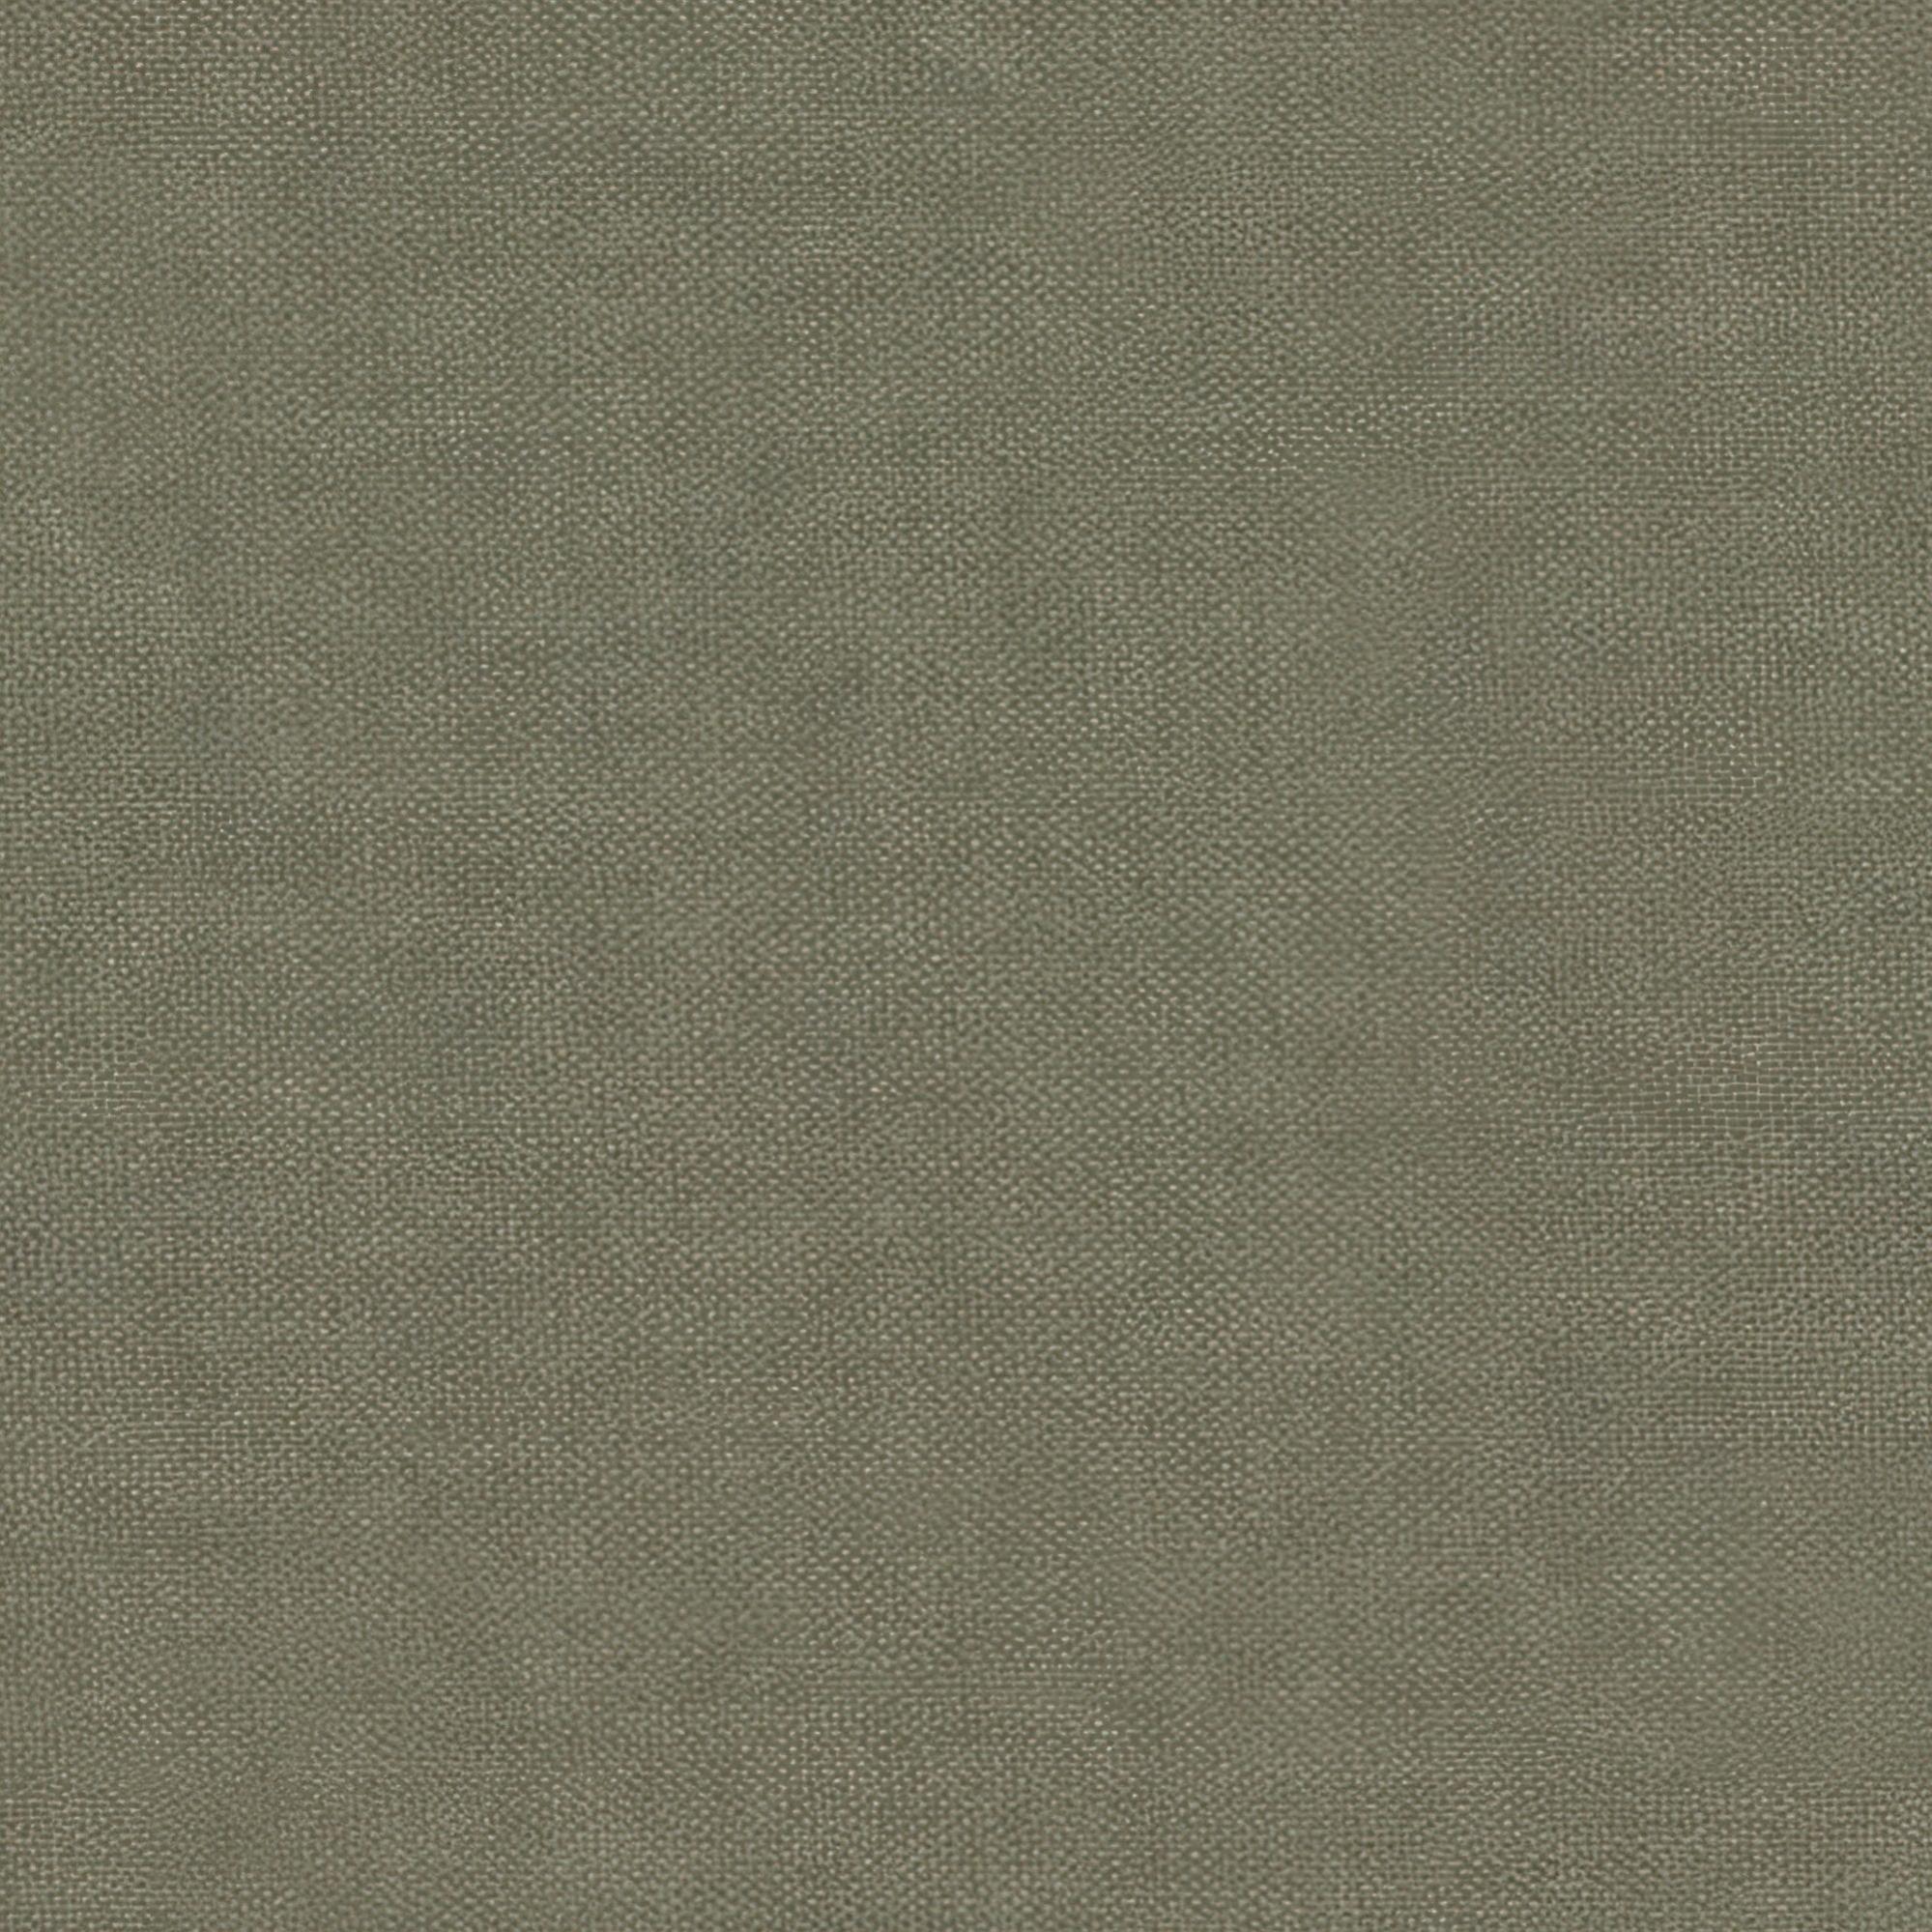 Tela al corte tapicería chenilla bretaña verde ancho 280 cm